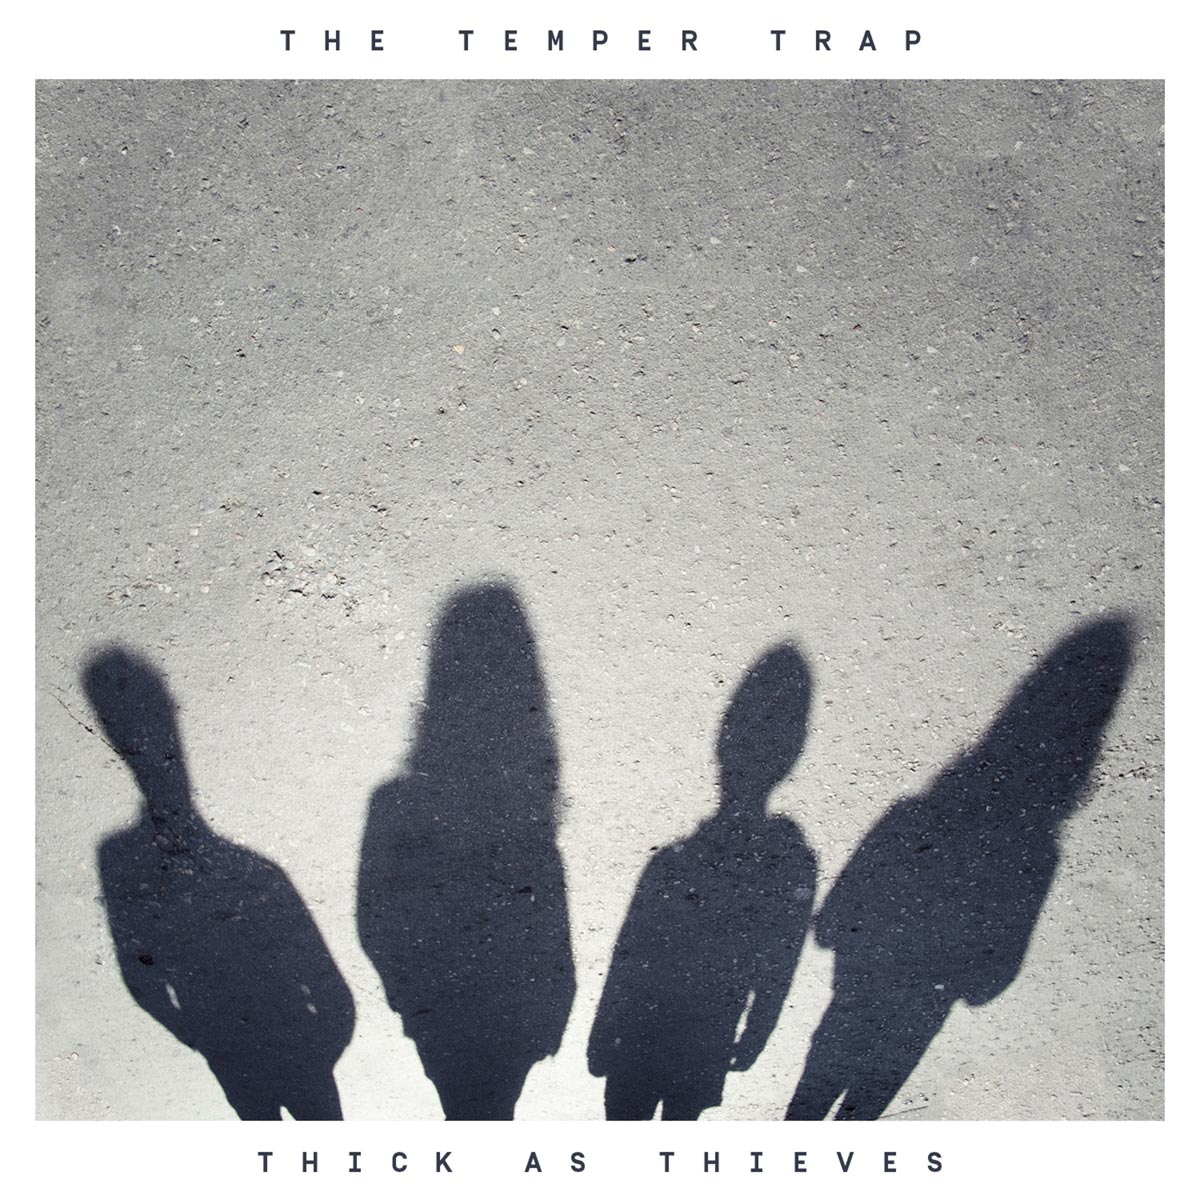 The temper trap: Thick as thieves, la portada de la canción